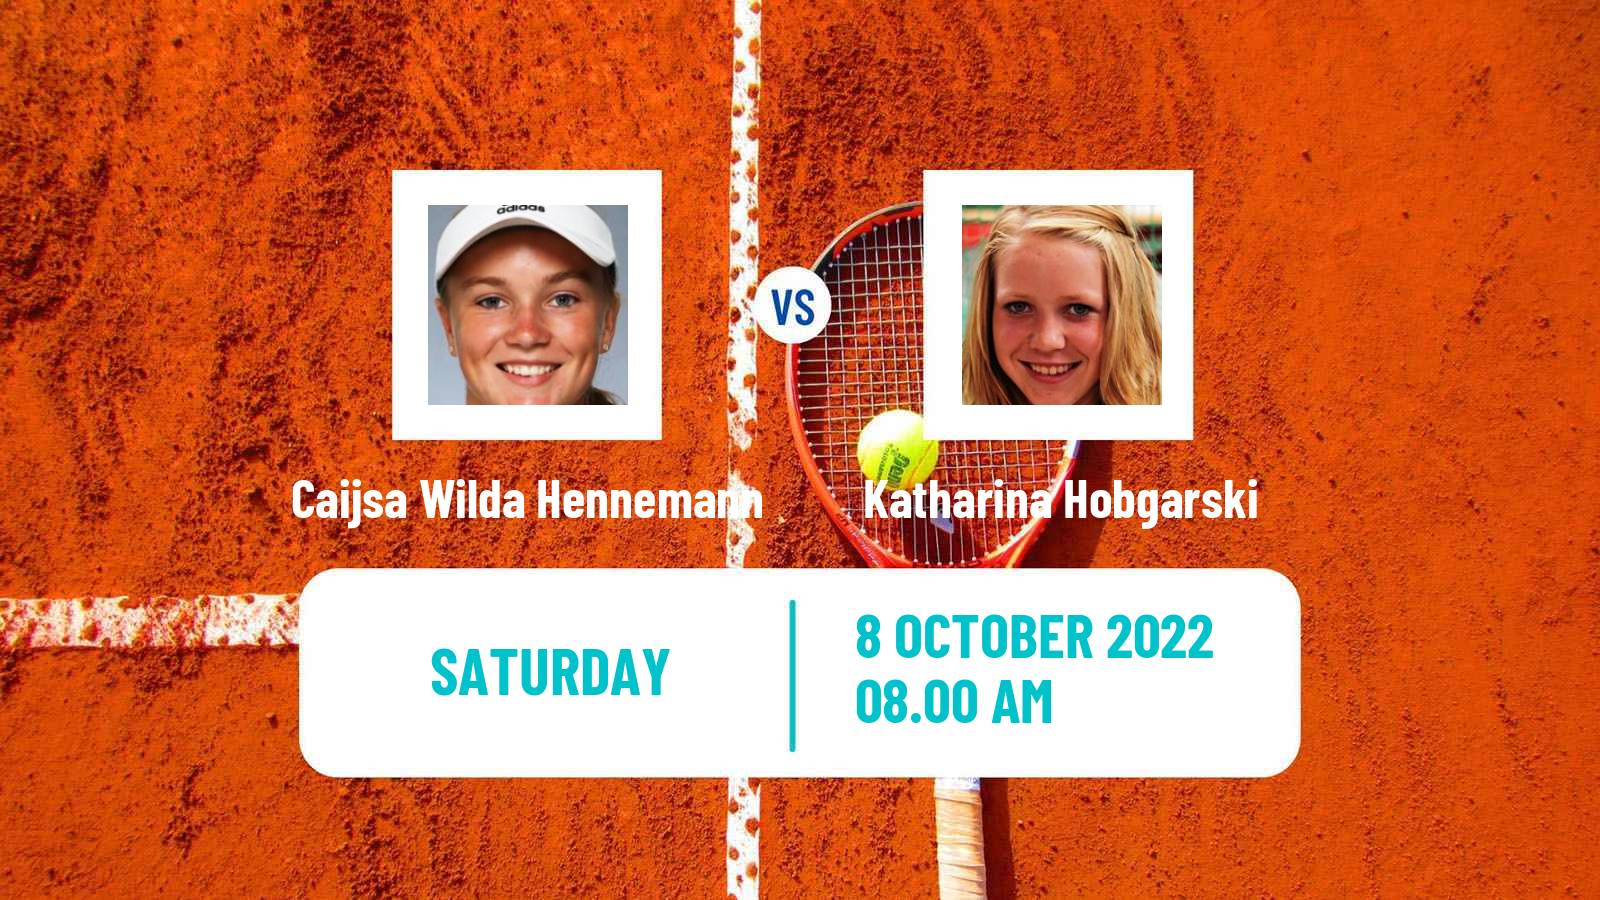 Tennis ITF Tournaments Caijsa Wilda Hennemann - Katharina Hobgarski